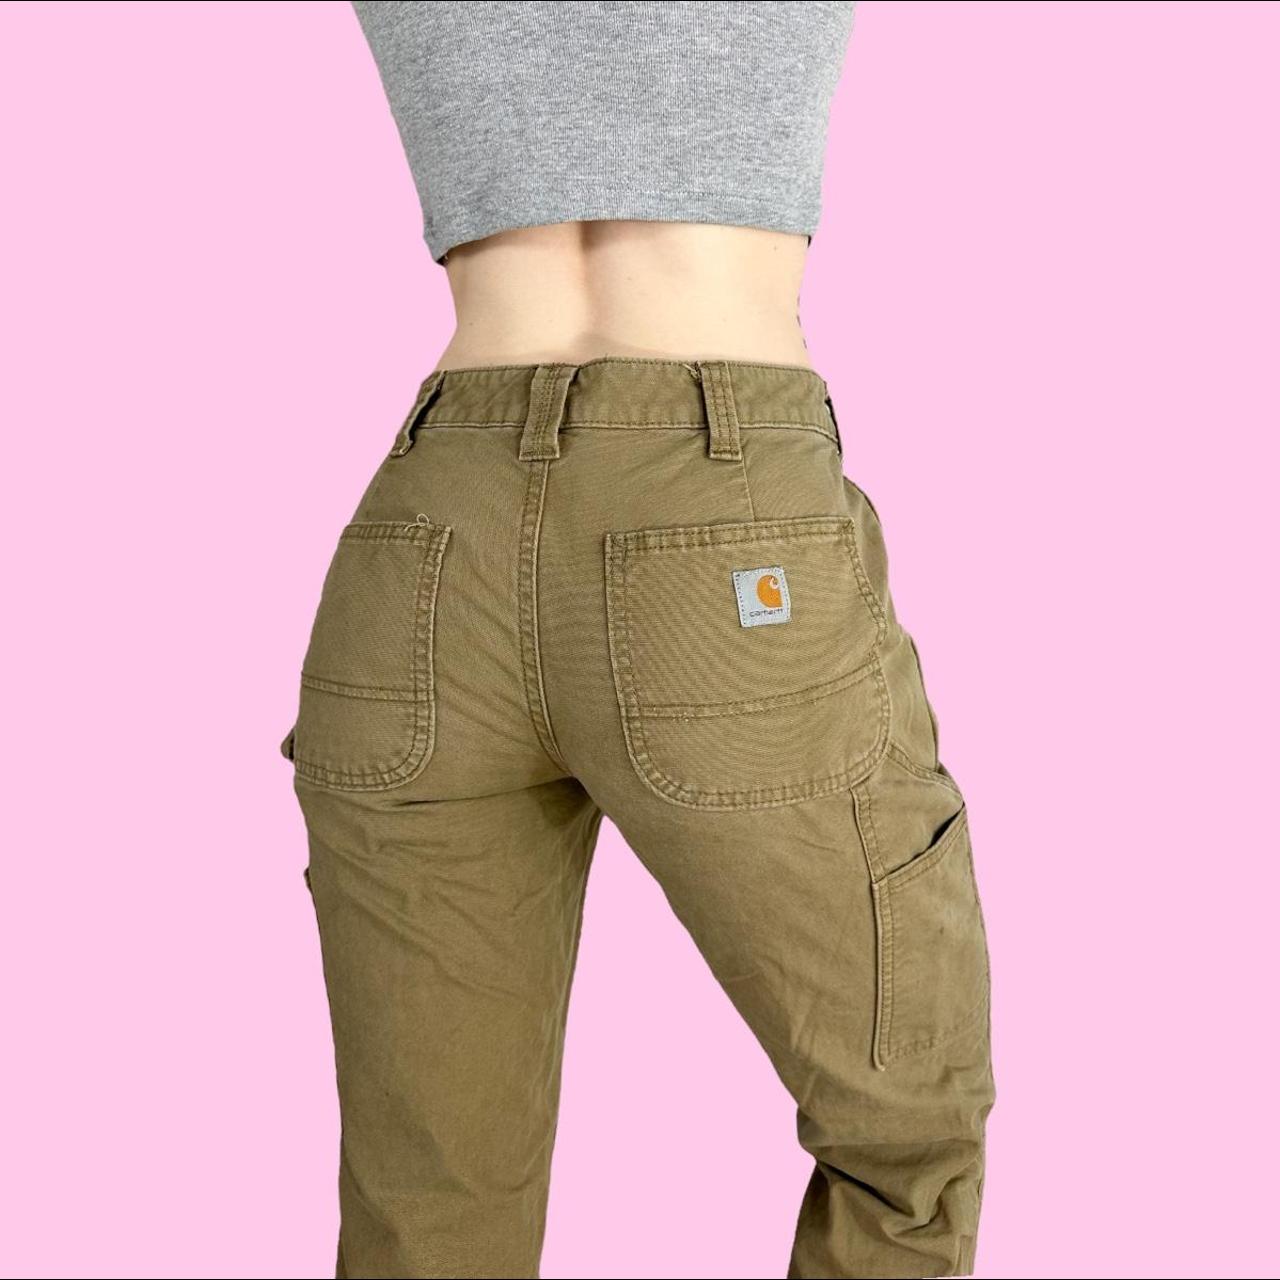 Carhartt Tan Canvas Cargo Pants, Button/zipper